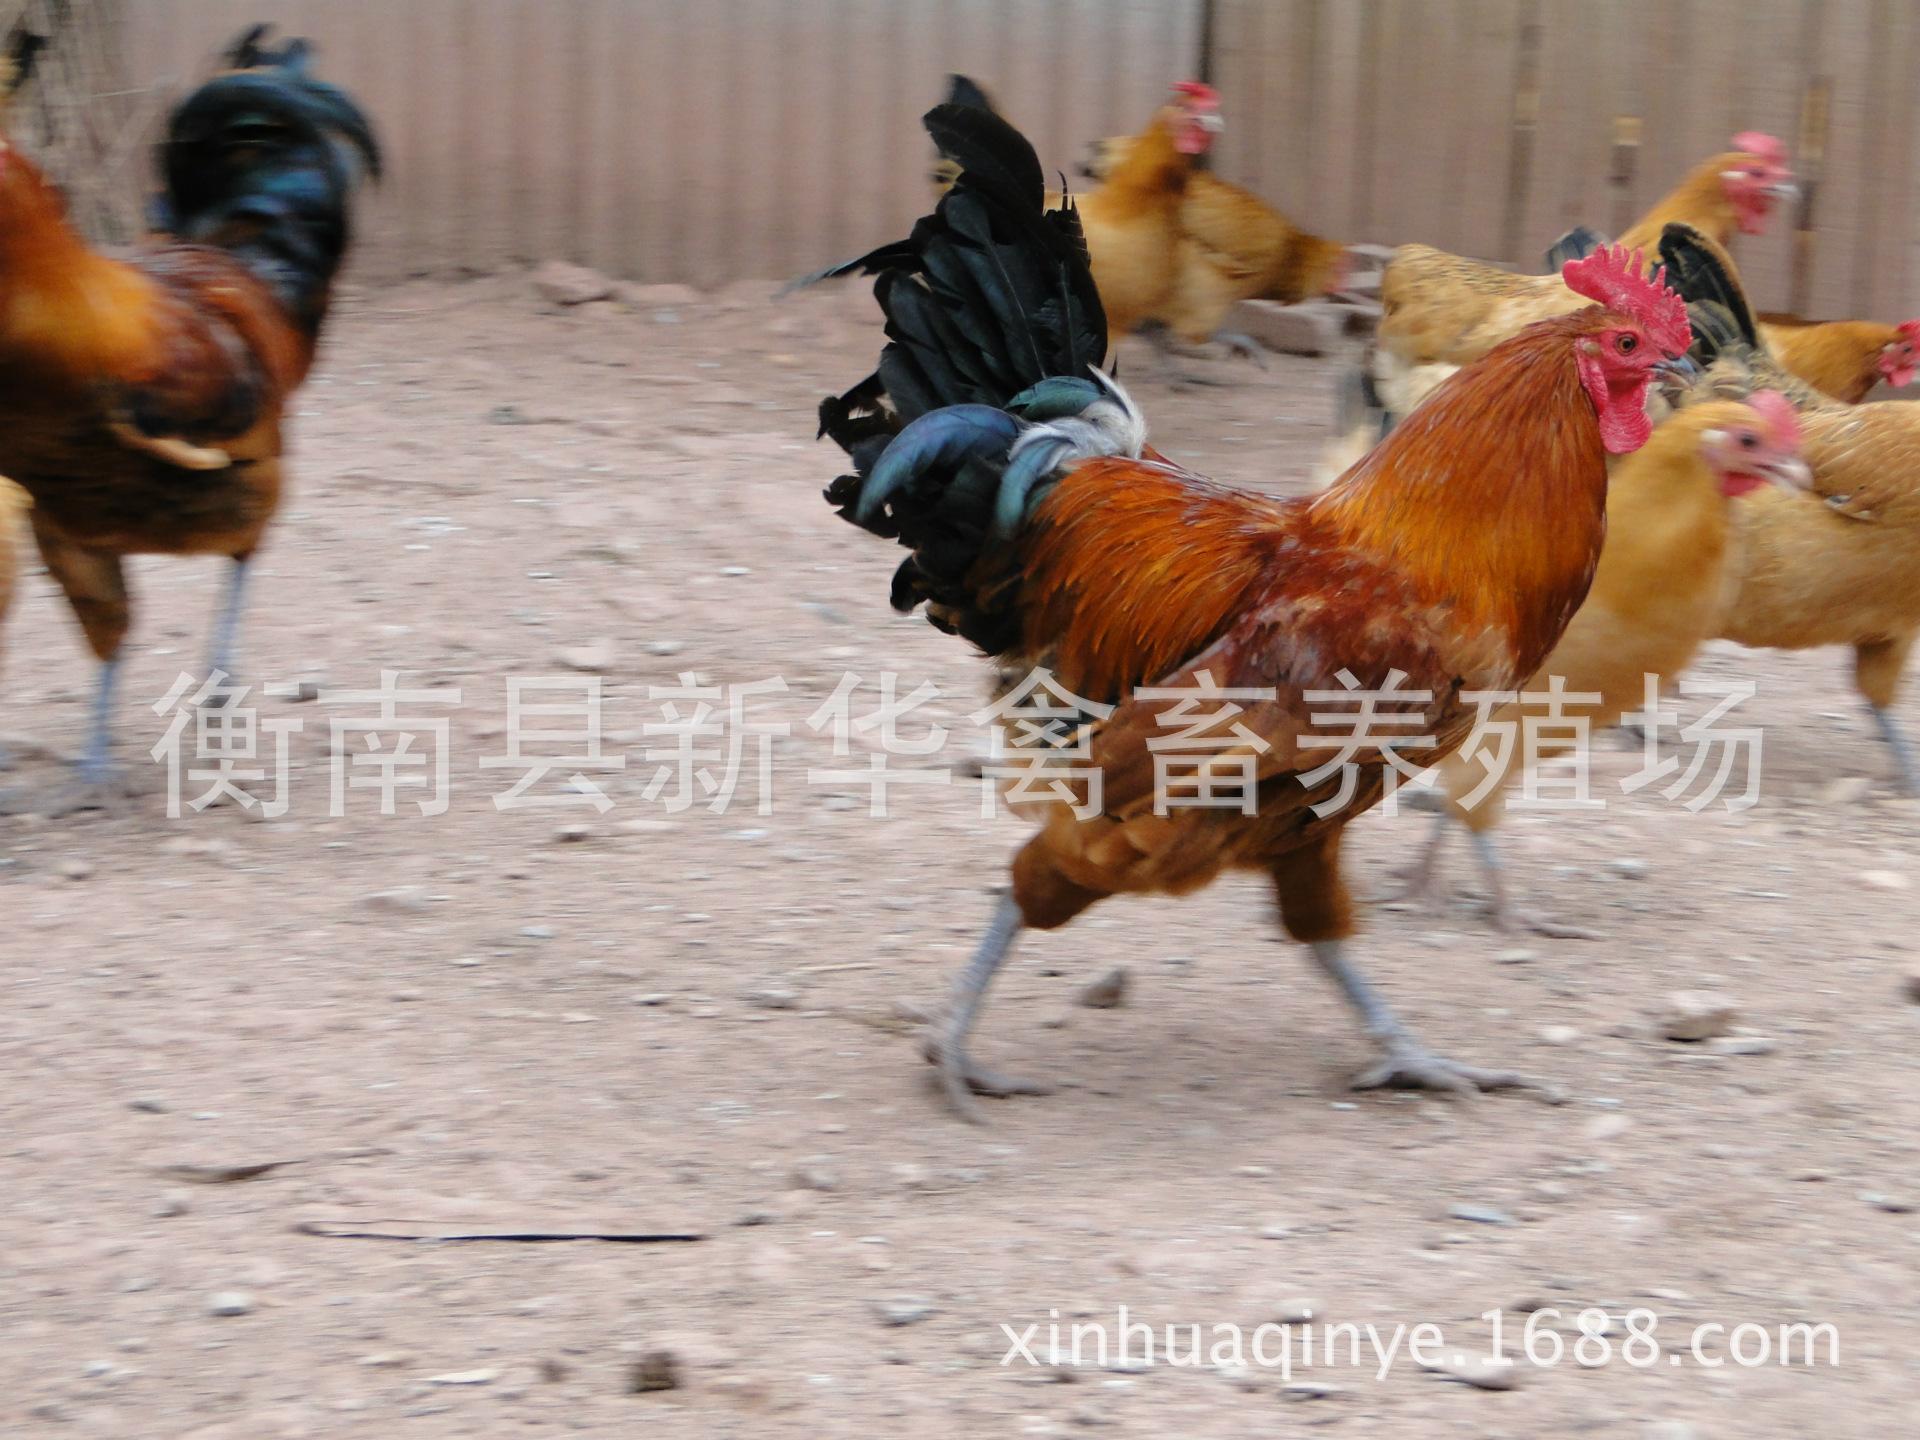 新华禽畜厂家直销正宗农家散养土鸡下单现杀包邮保鲜商品土鸡示例图7